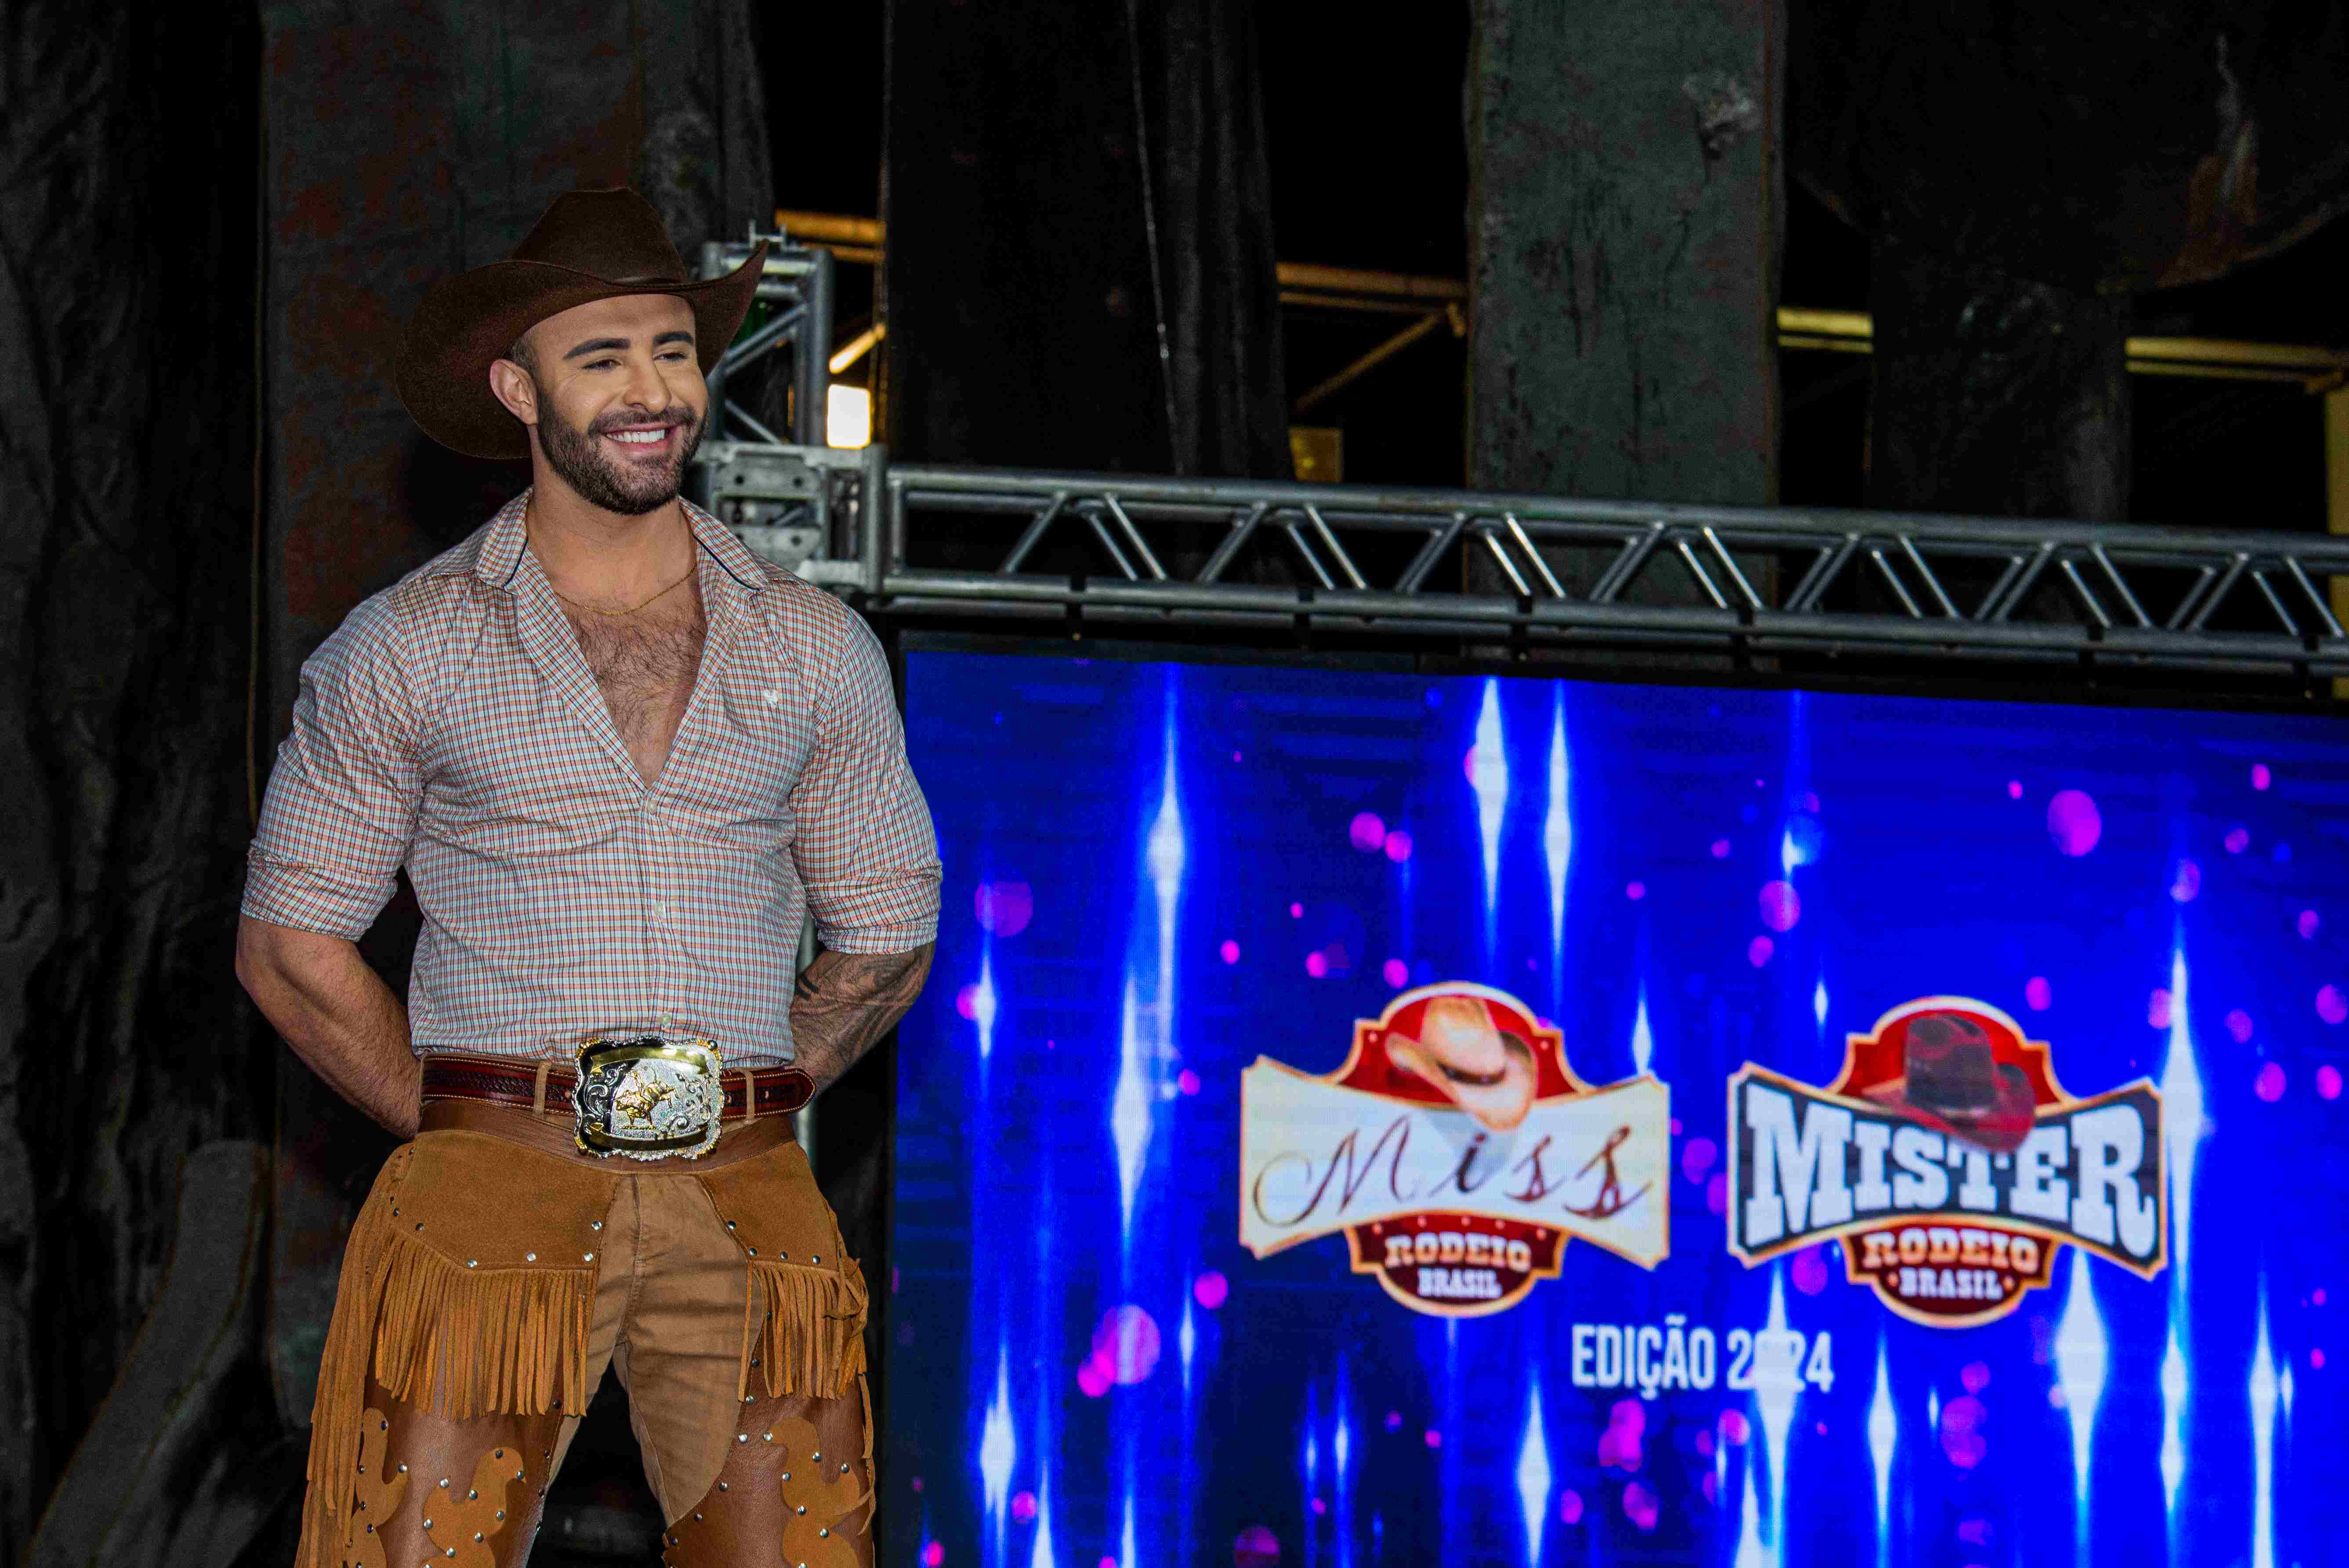 Mister Cowboy Brasil 2024, Estevan, participará da Festa do Peão de Americana, evento que terá show de Gusttavo Lima